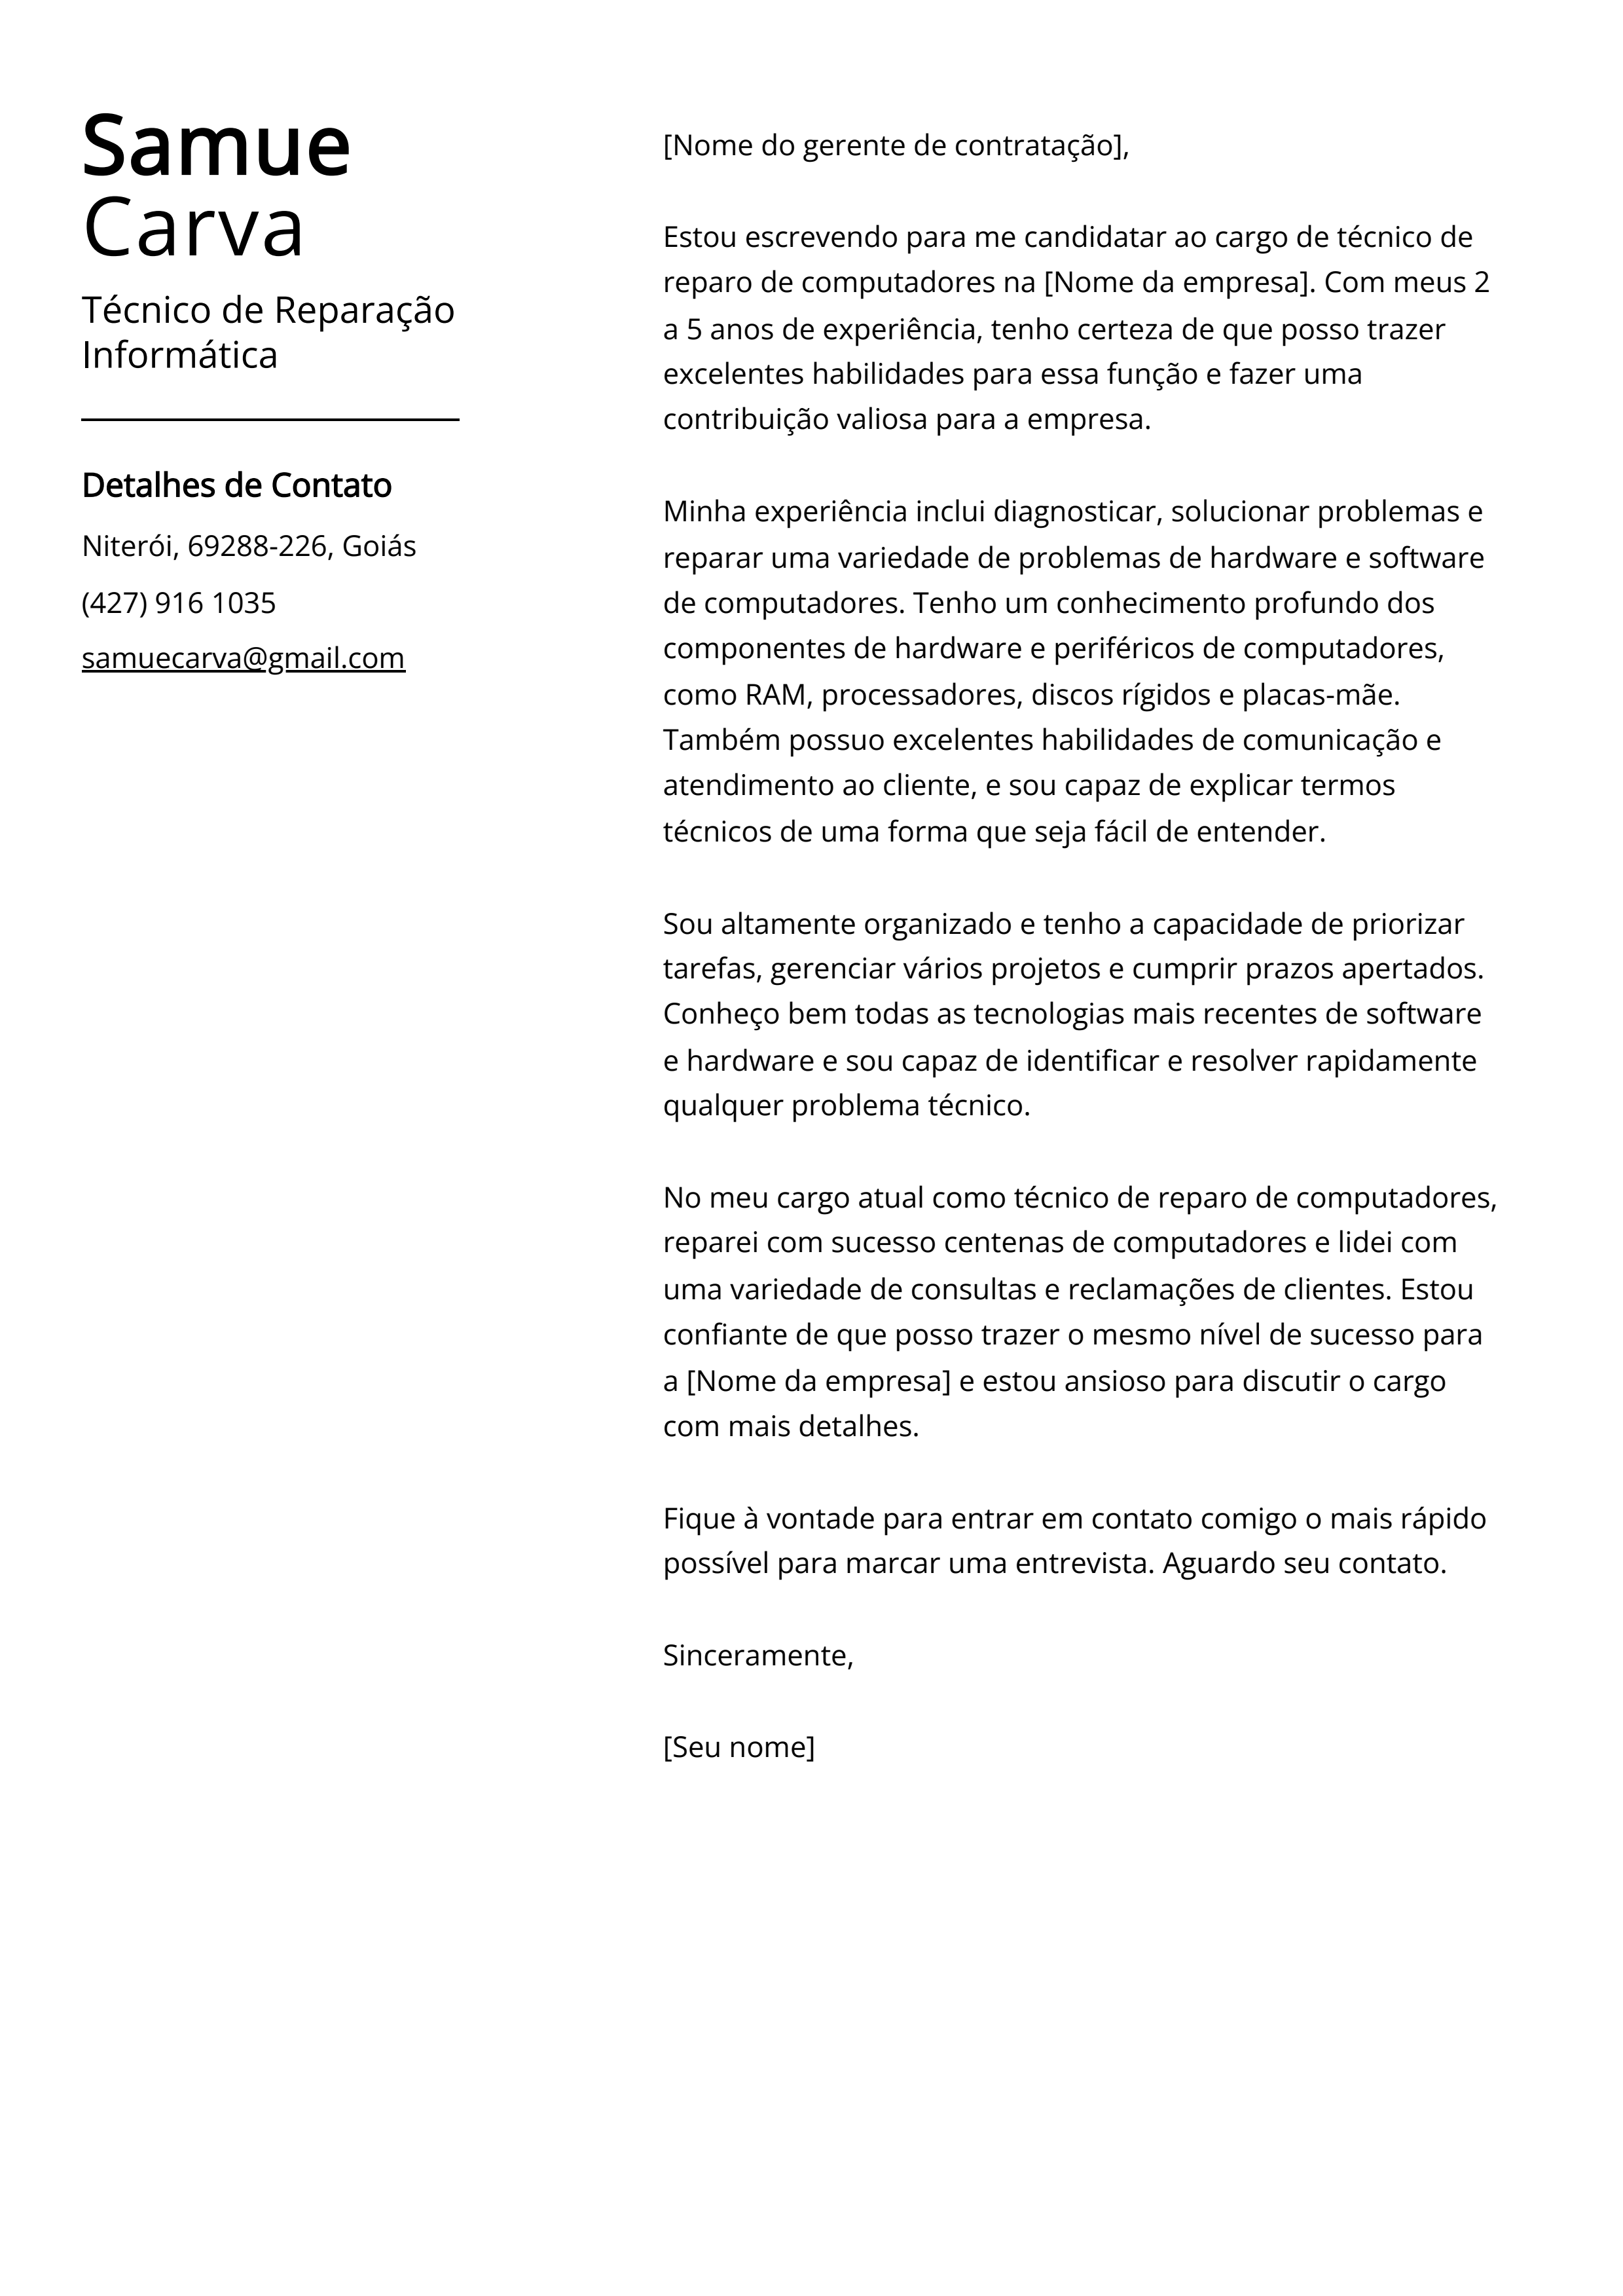 Exemplo de Carta de Apresentação de Técnico de Reparação Informática